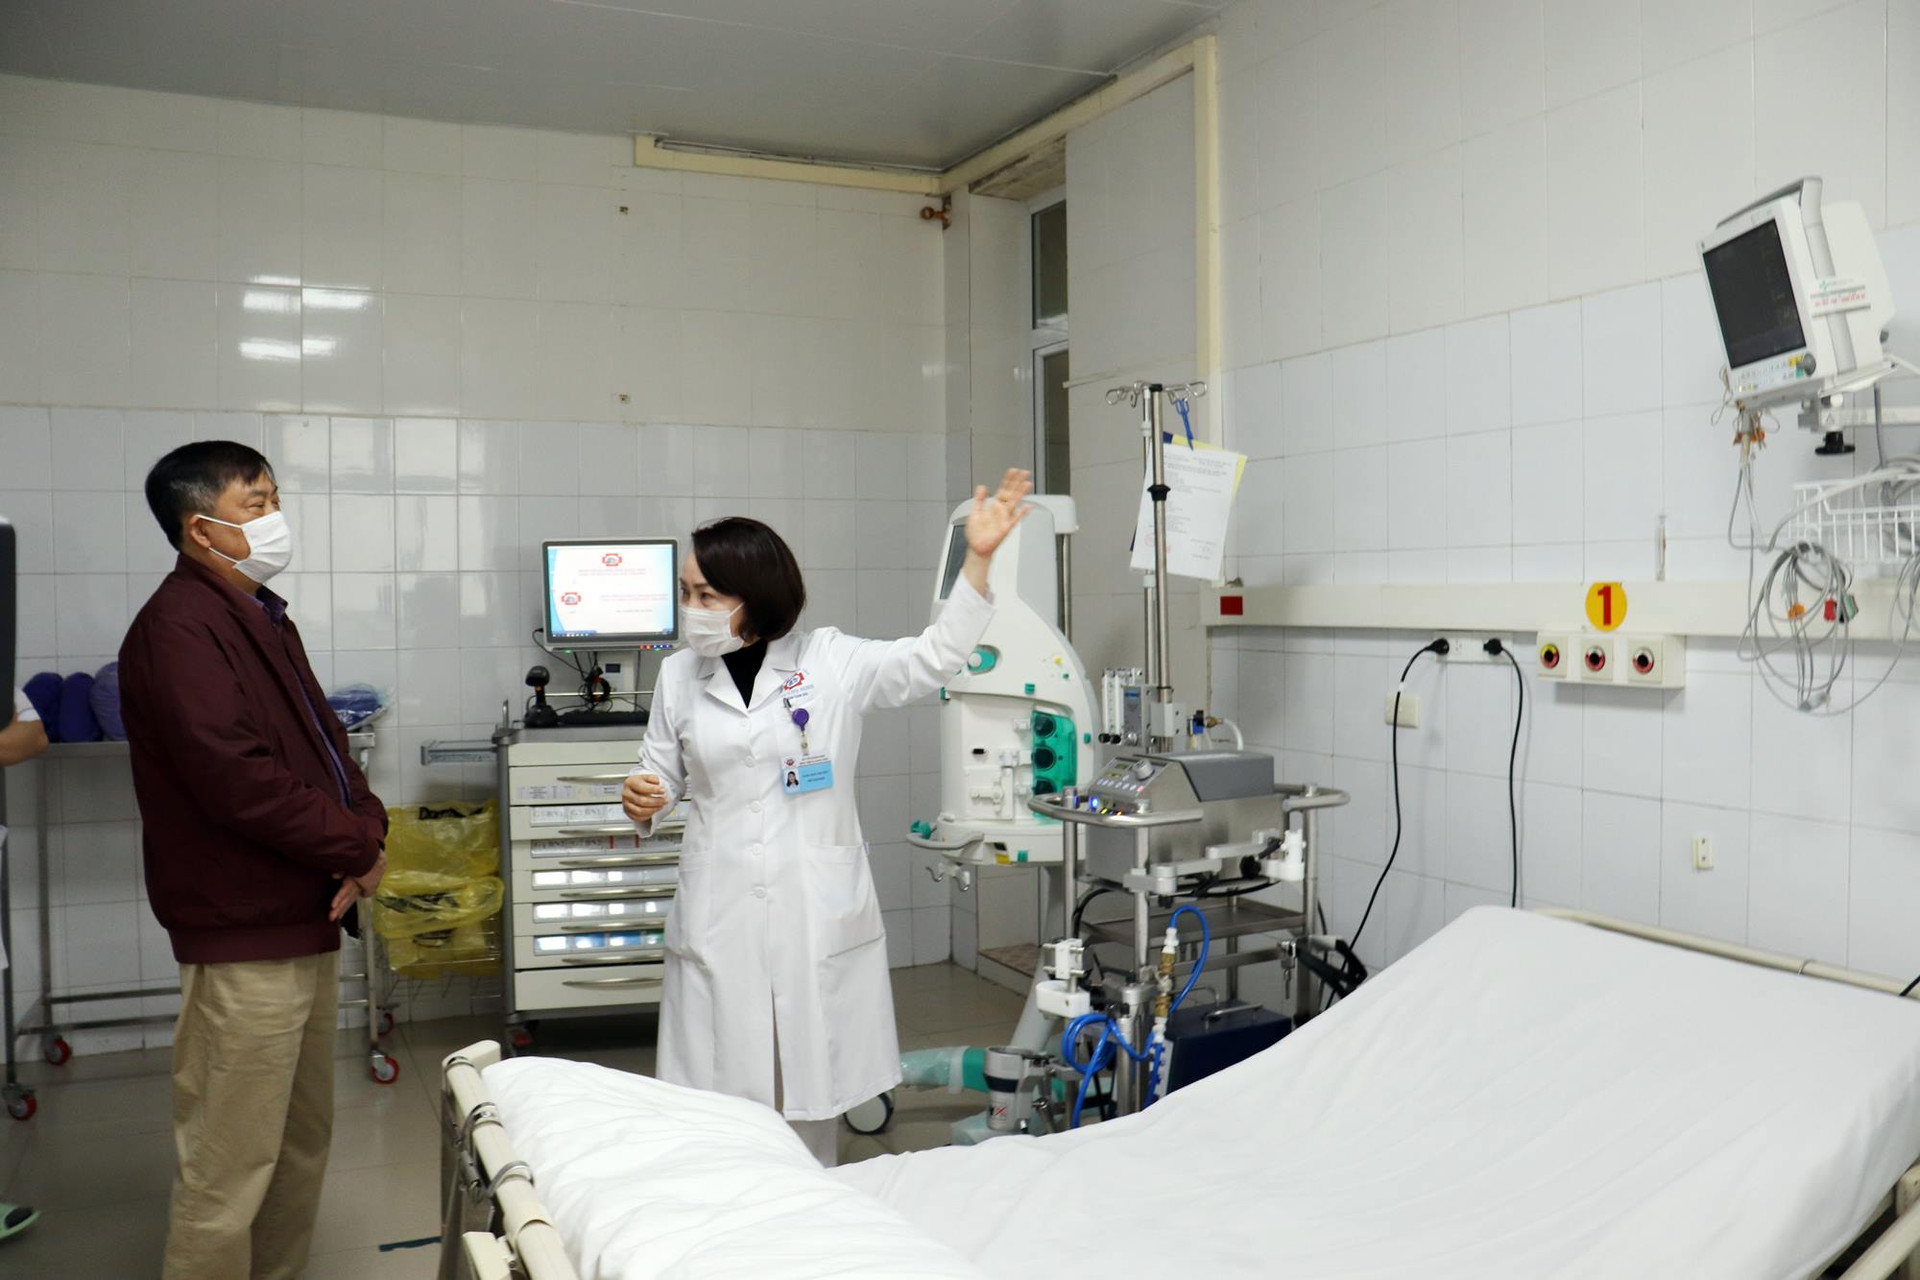 Bệnh viện Đa khoa tỉnh Quảng Ninh hoàn toàn làm chủ kỹ thuật ECMO, sẵn sàng cho việc thu dung, điều trị bệnh nhân nguy kịch do Covid-19 nếu có. Ảnh: Báo Quảng Ninh